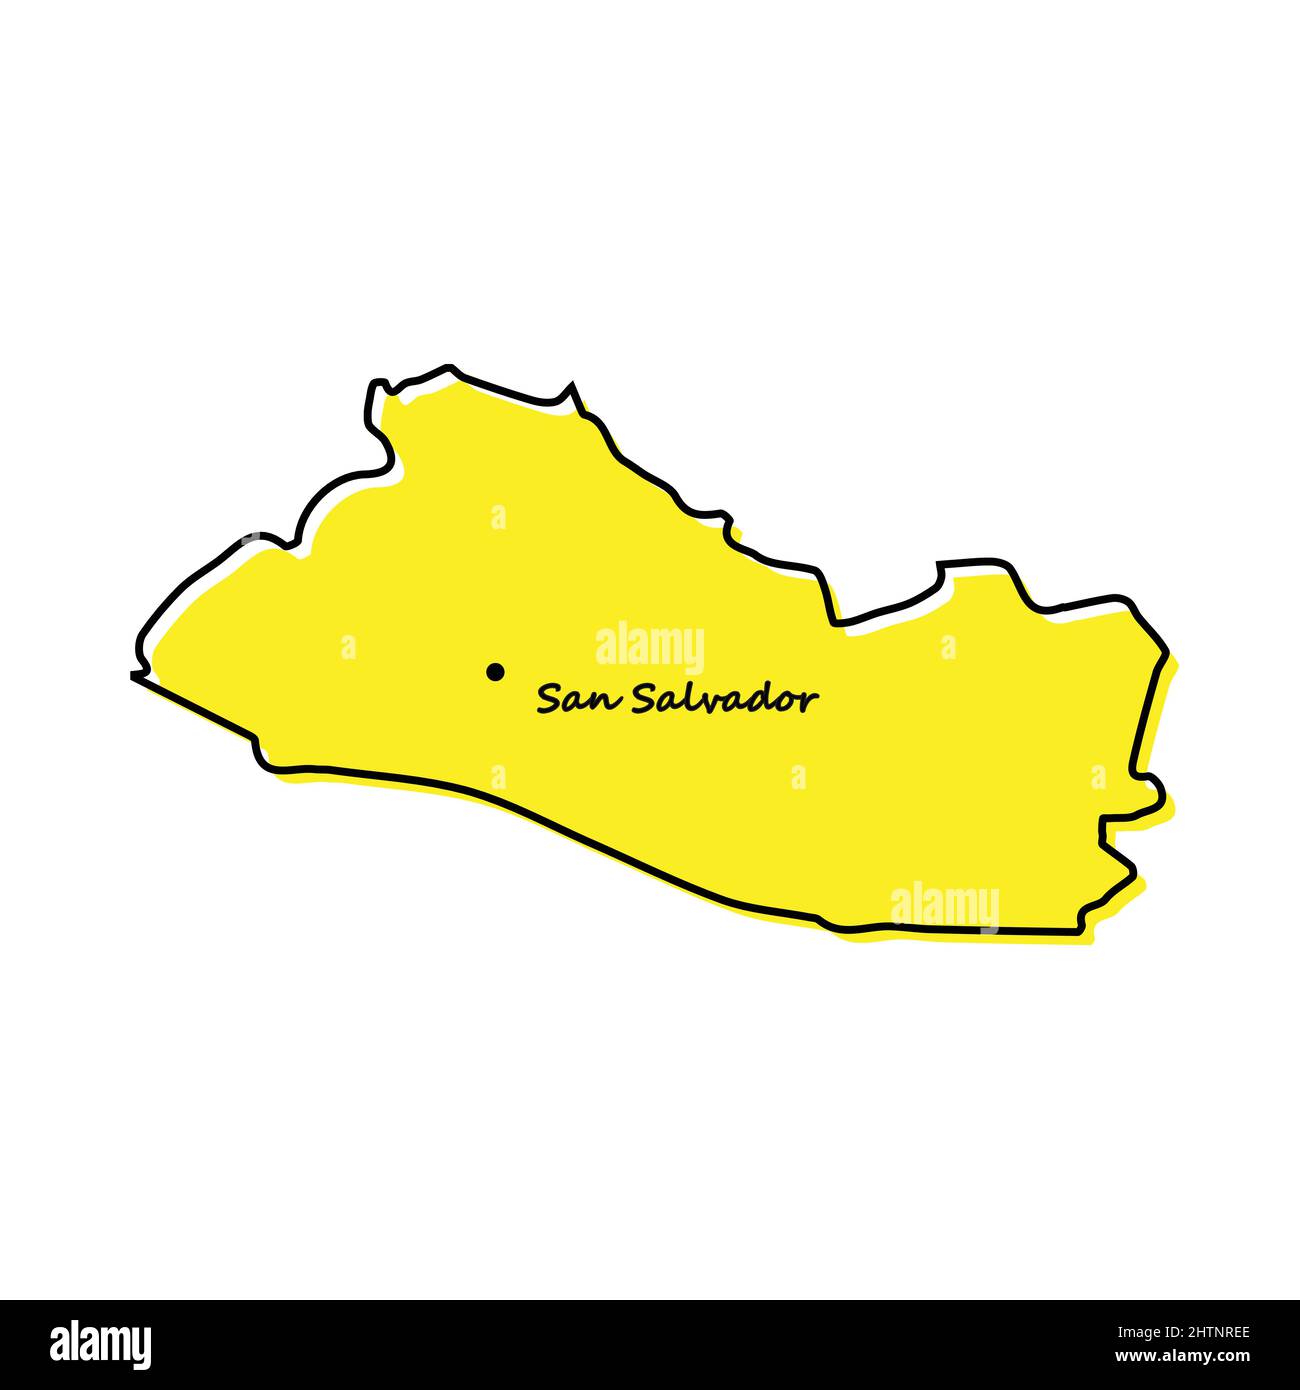 Semplice mappa di El Salvador con posizione capitale. Design minimalista stilizzato Illustrazione Vettoriale